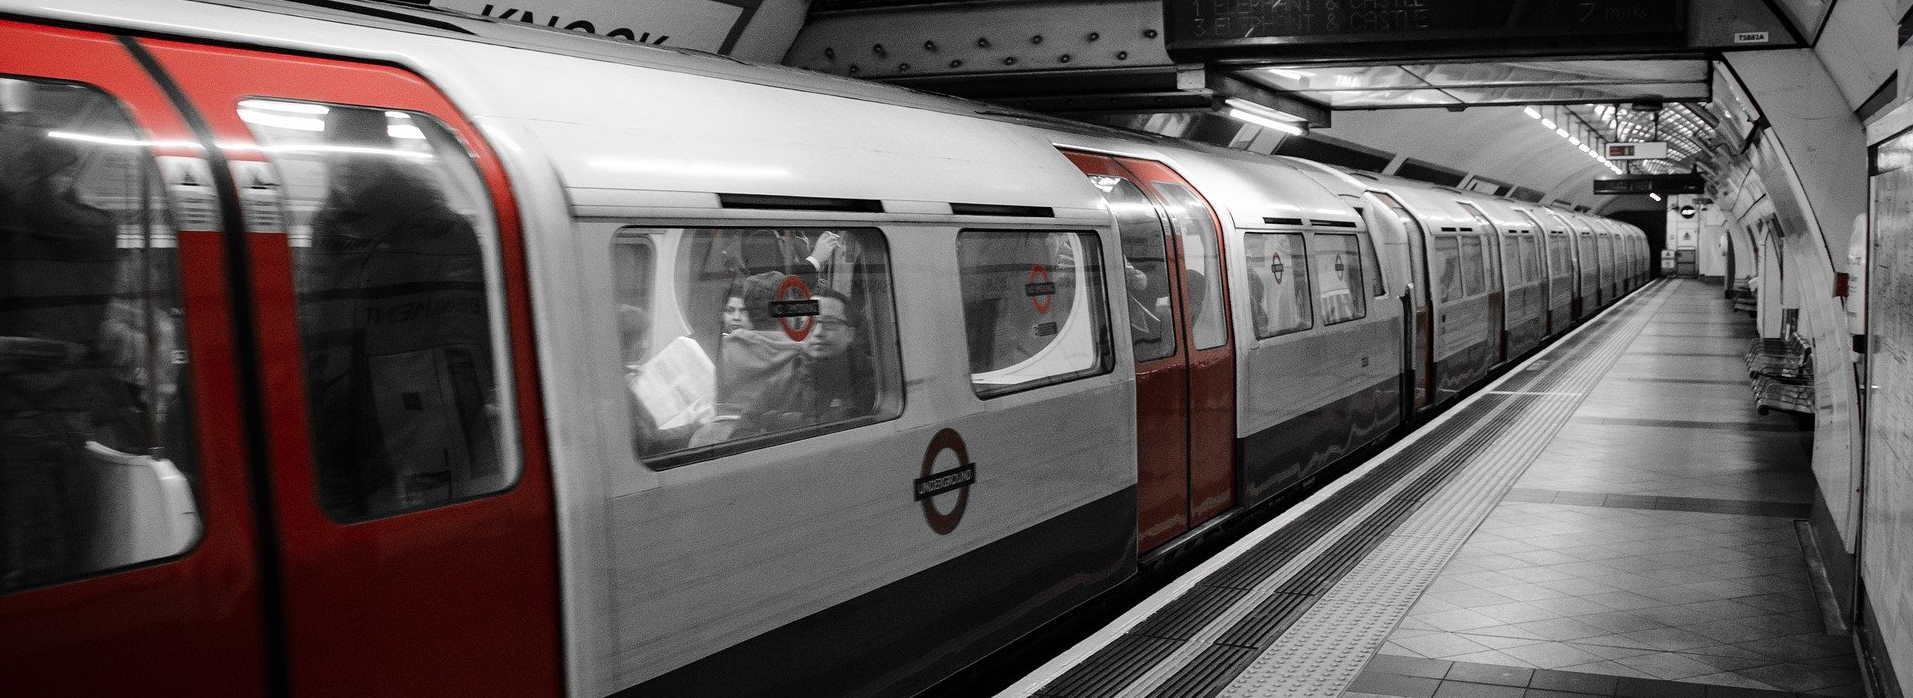 Header image: Underground rail - source Pixabay